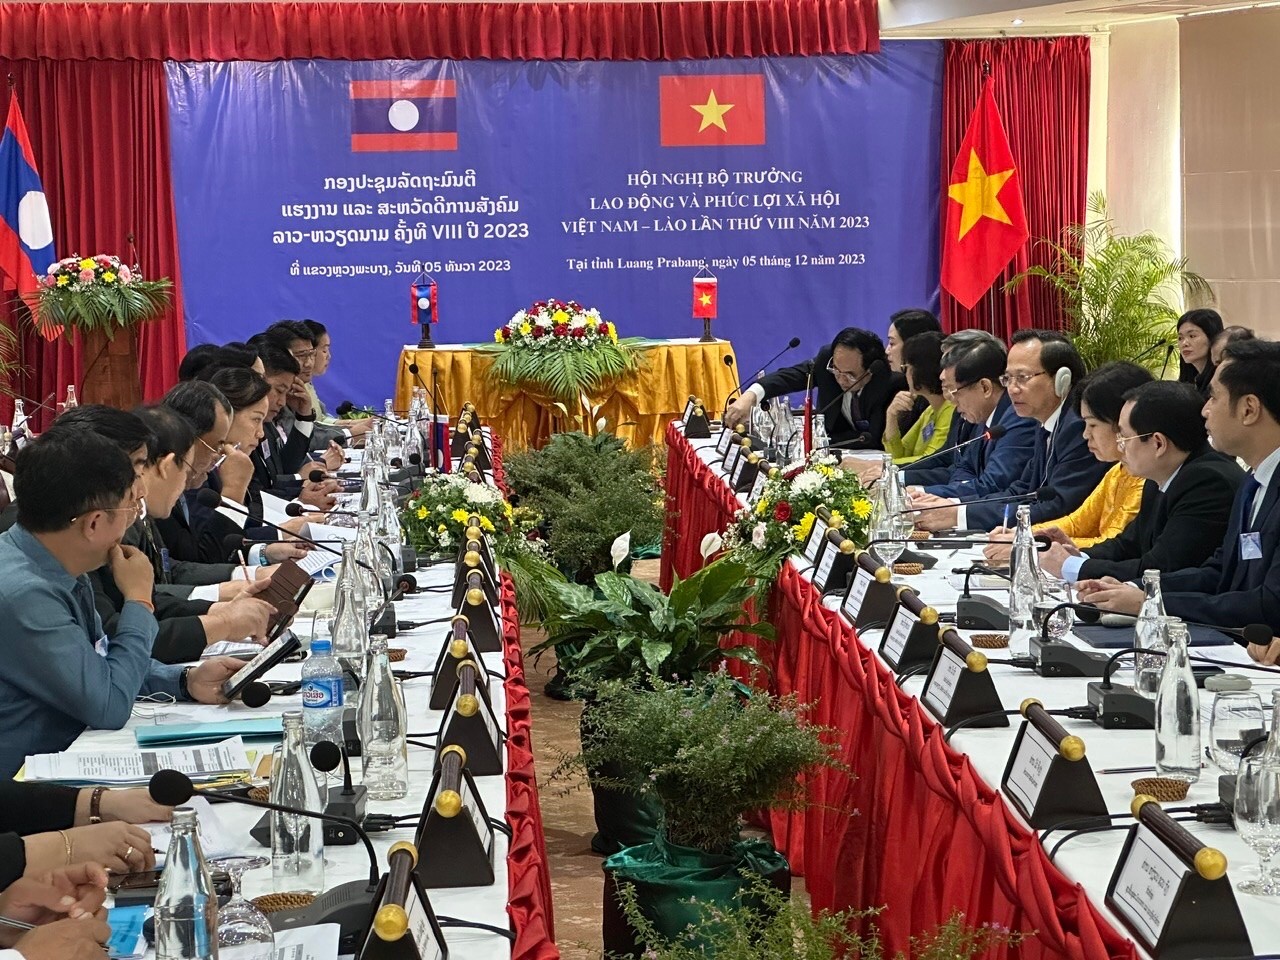 Tăng cường hợp tác lao động, phúc lợi xã hội giữa Việt Nam và Lào